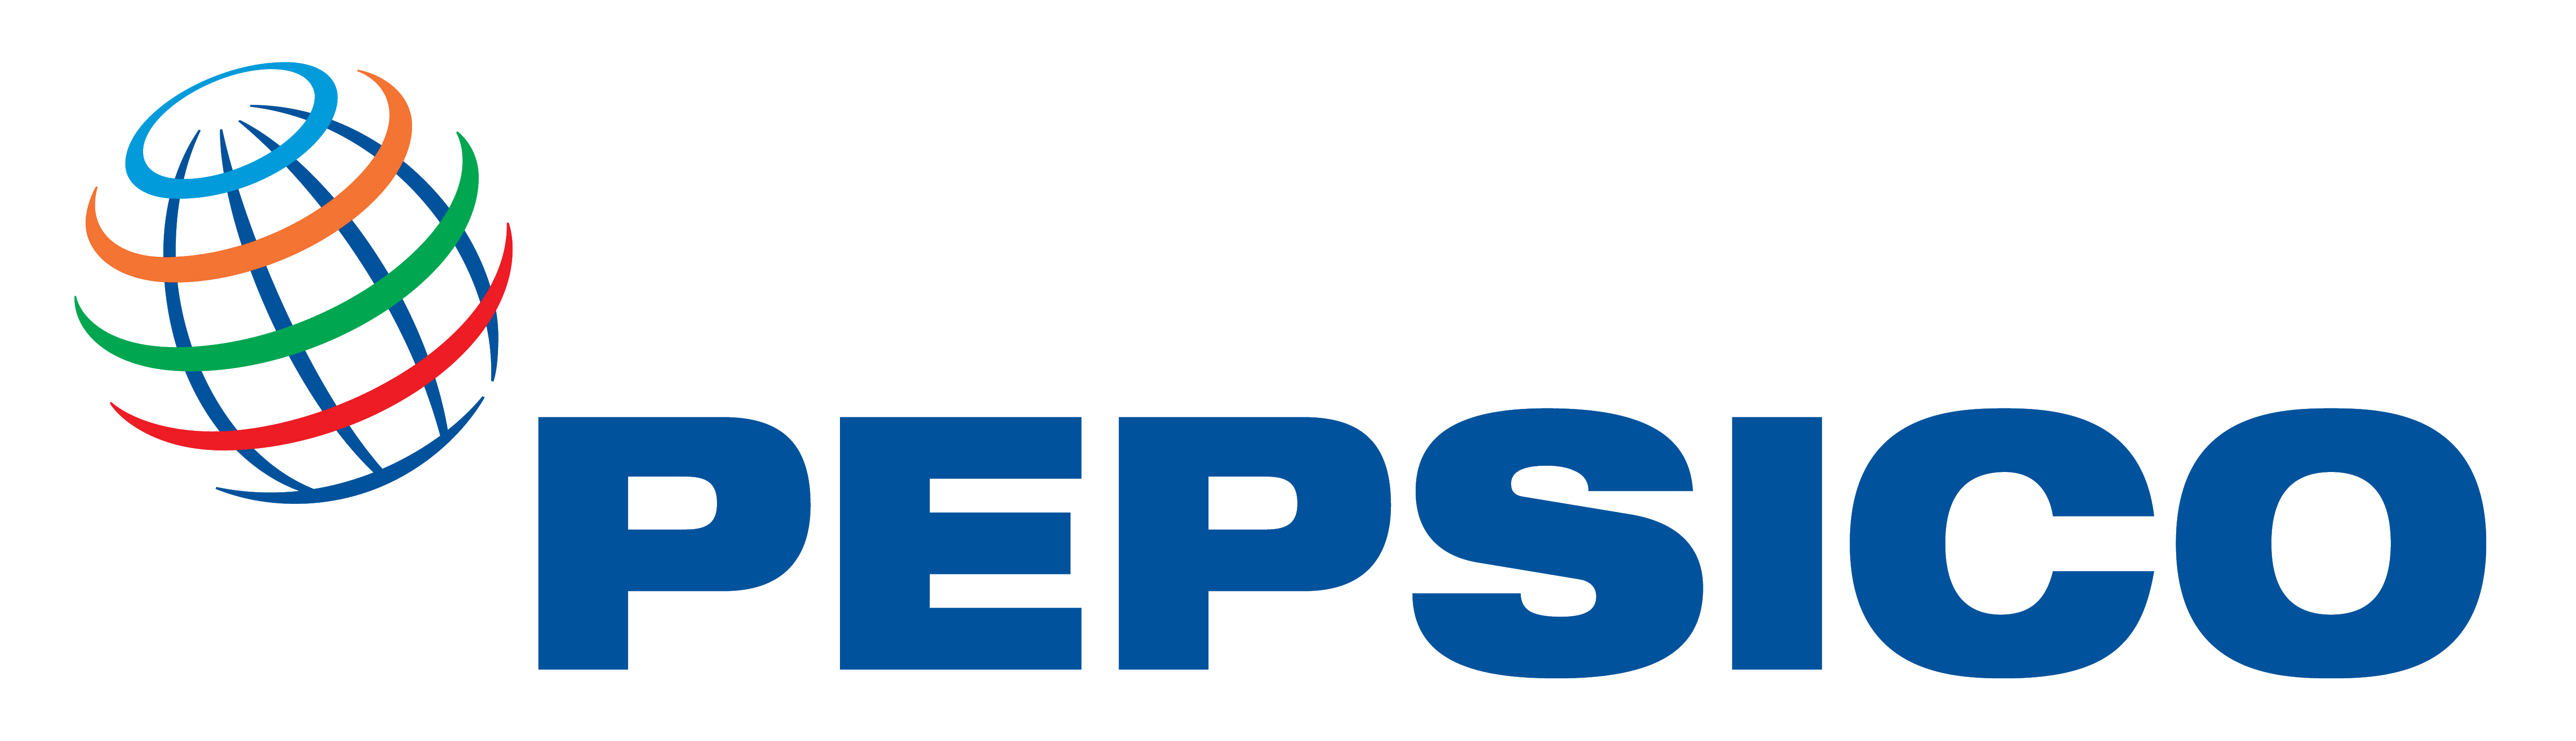 PepsiCo Logo Transparent File